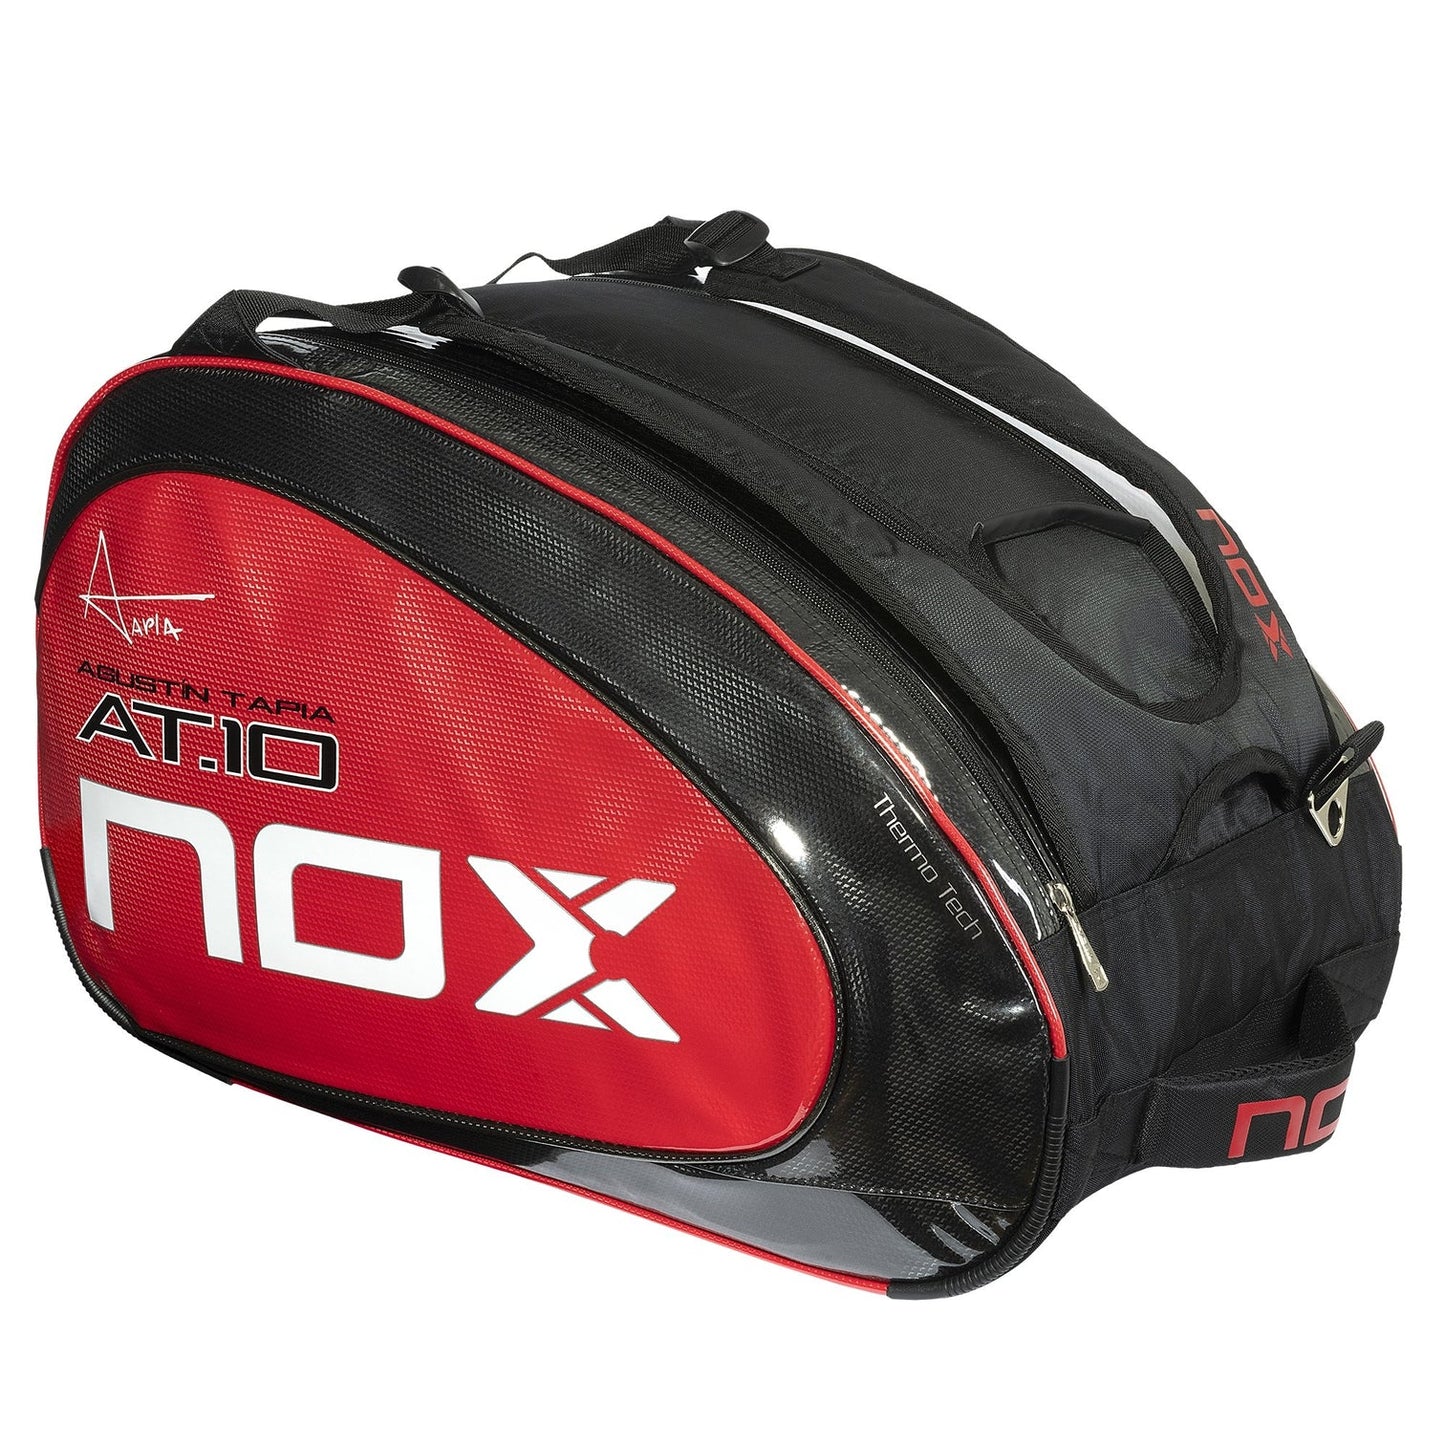 NOX PADEL BAG - AT10 TEAM BLACK RED LOGO